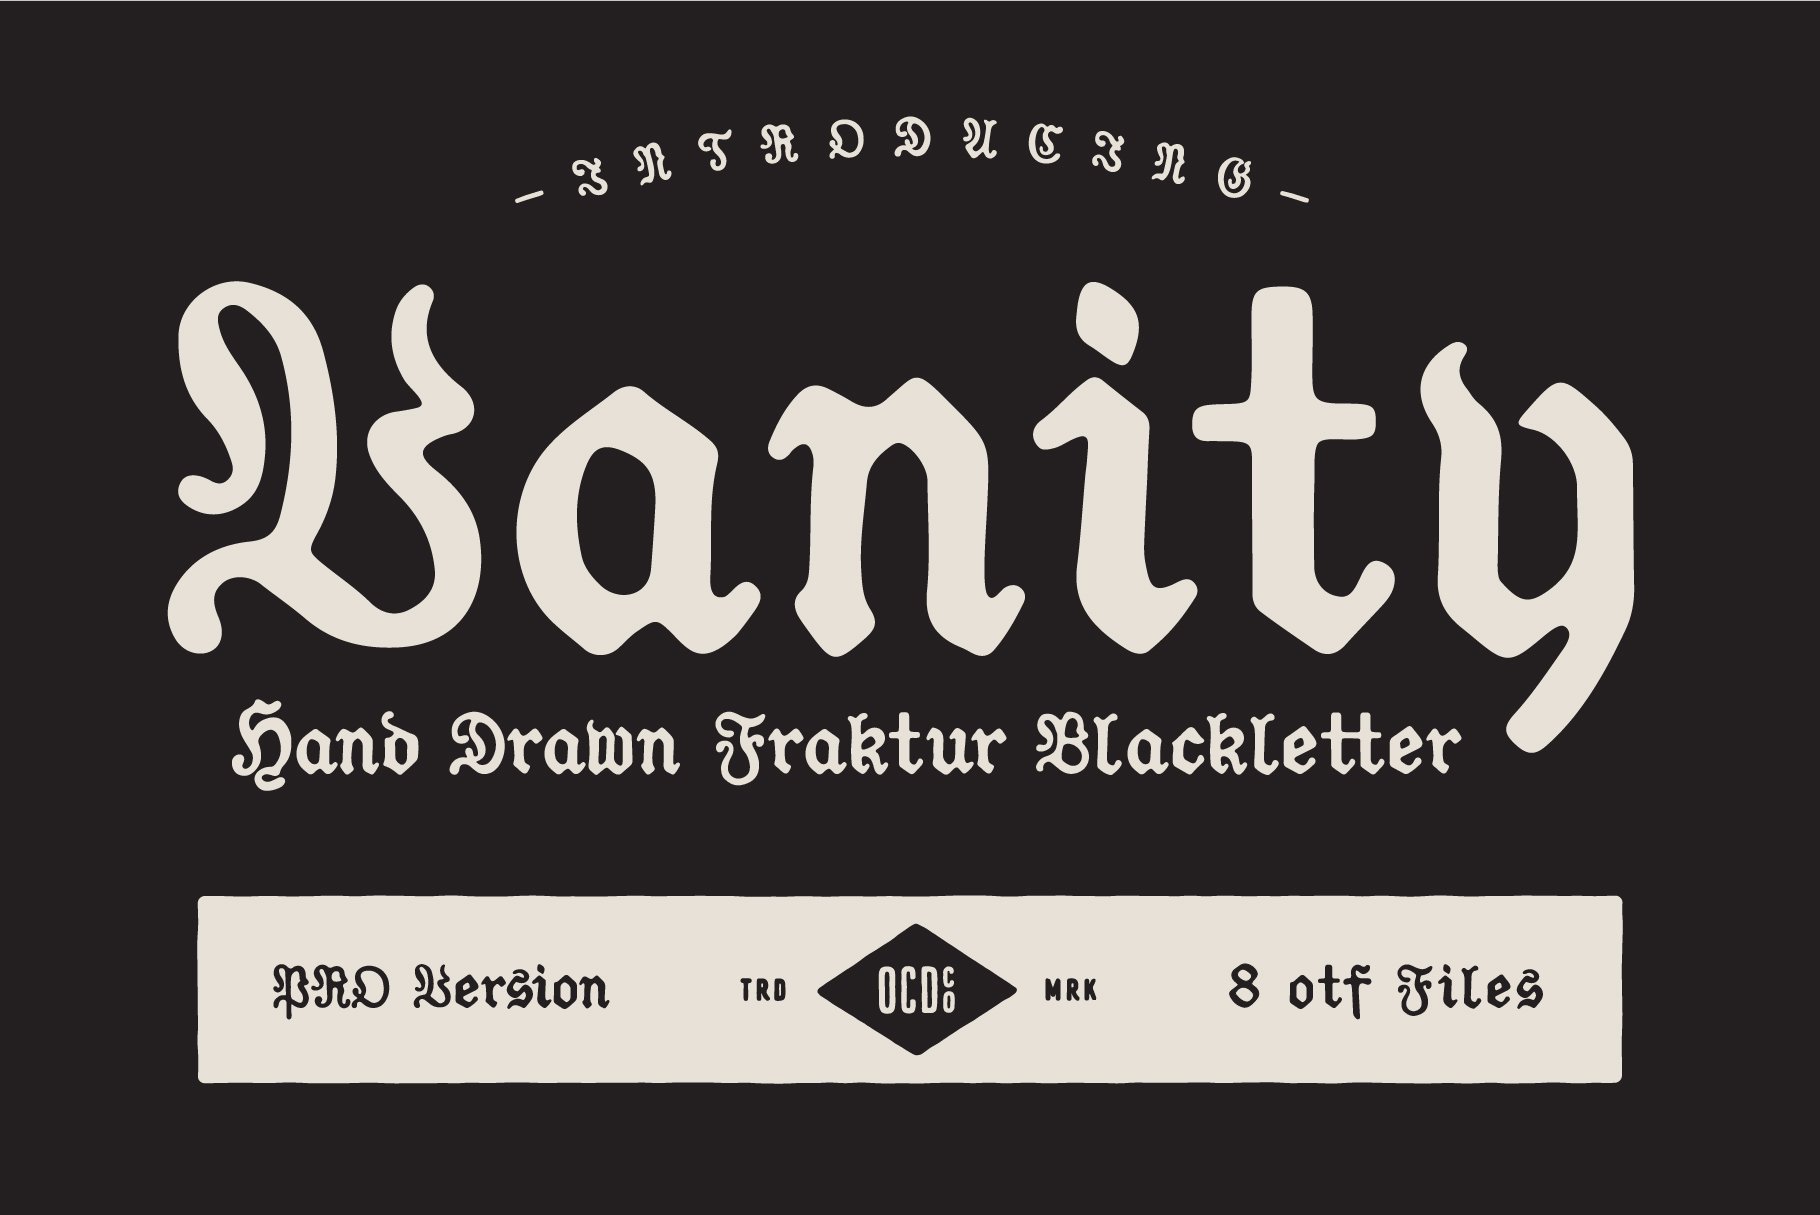 Vanity - Fraktur Blackletter cover image.